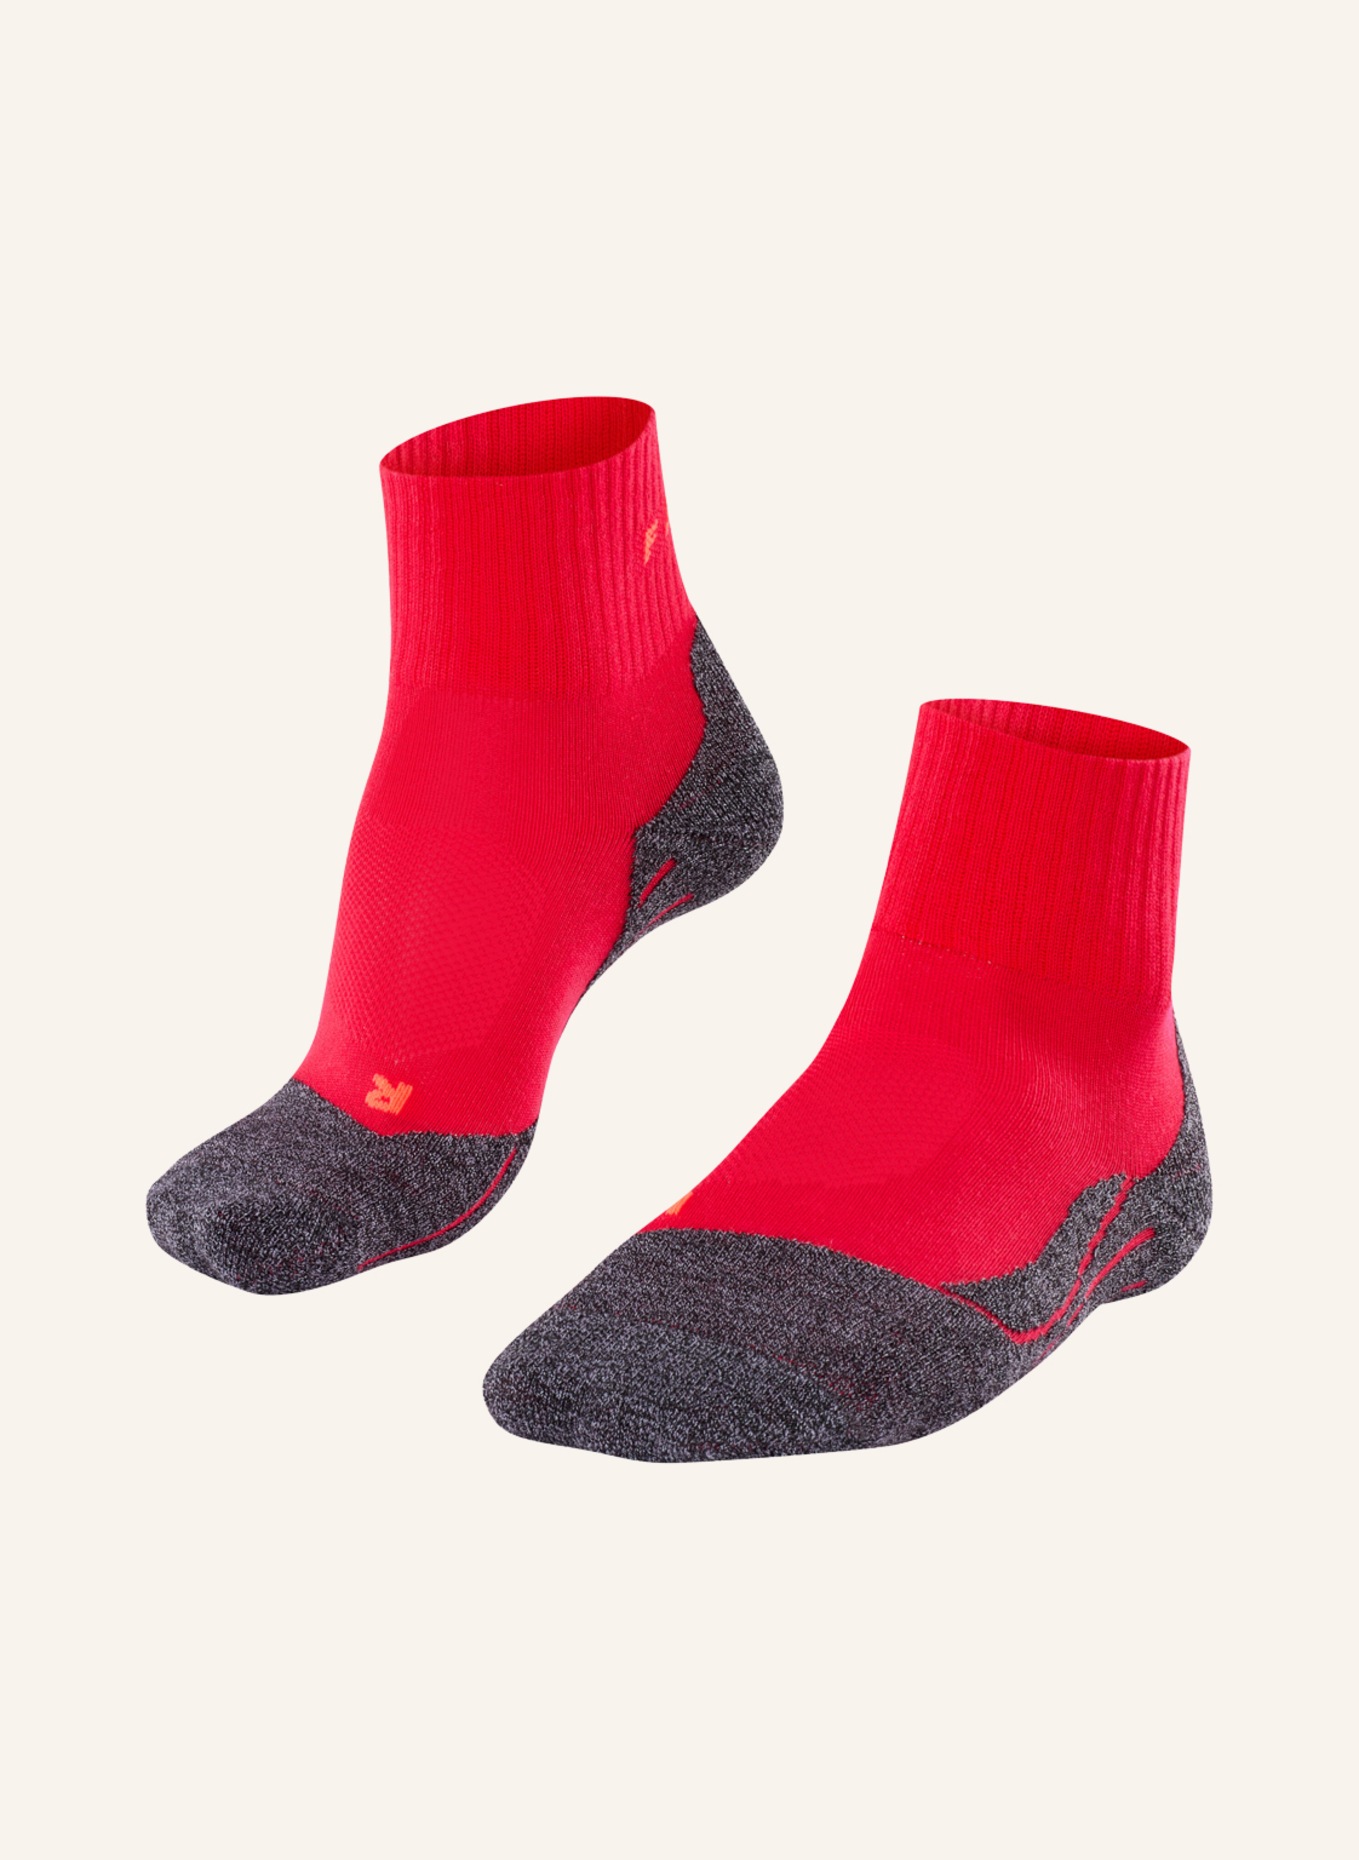 FALKE Trekking-Socken TK2 COOL, Farbe: 8564 ROSE (Bild 1)